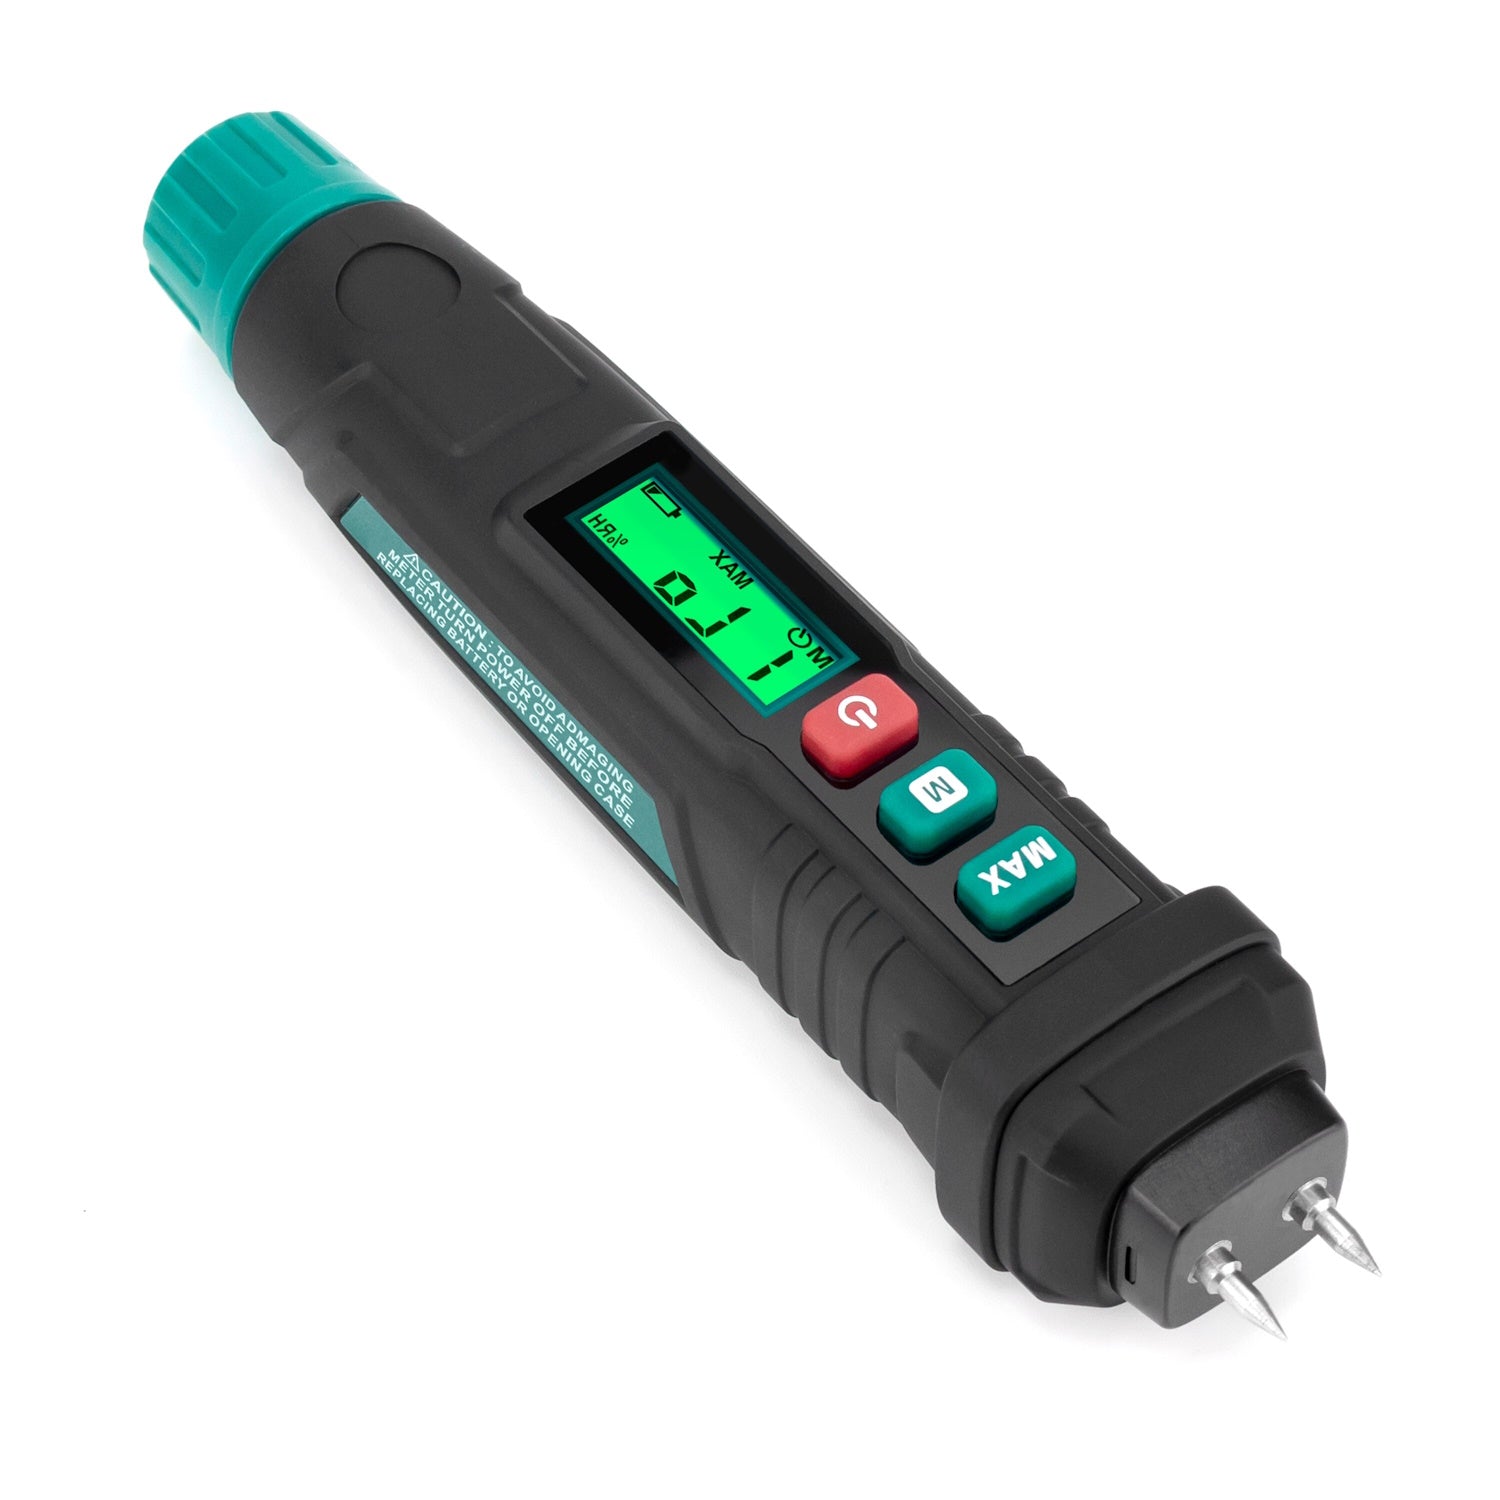 Humidimètre numérique pour bois de type stylo ERICKHOLL avec écran LCD. Bois  - Béton + 